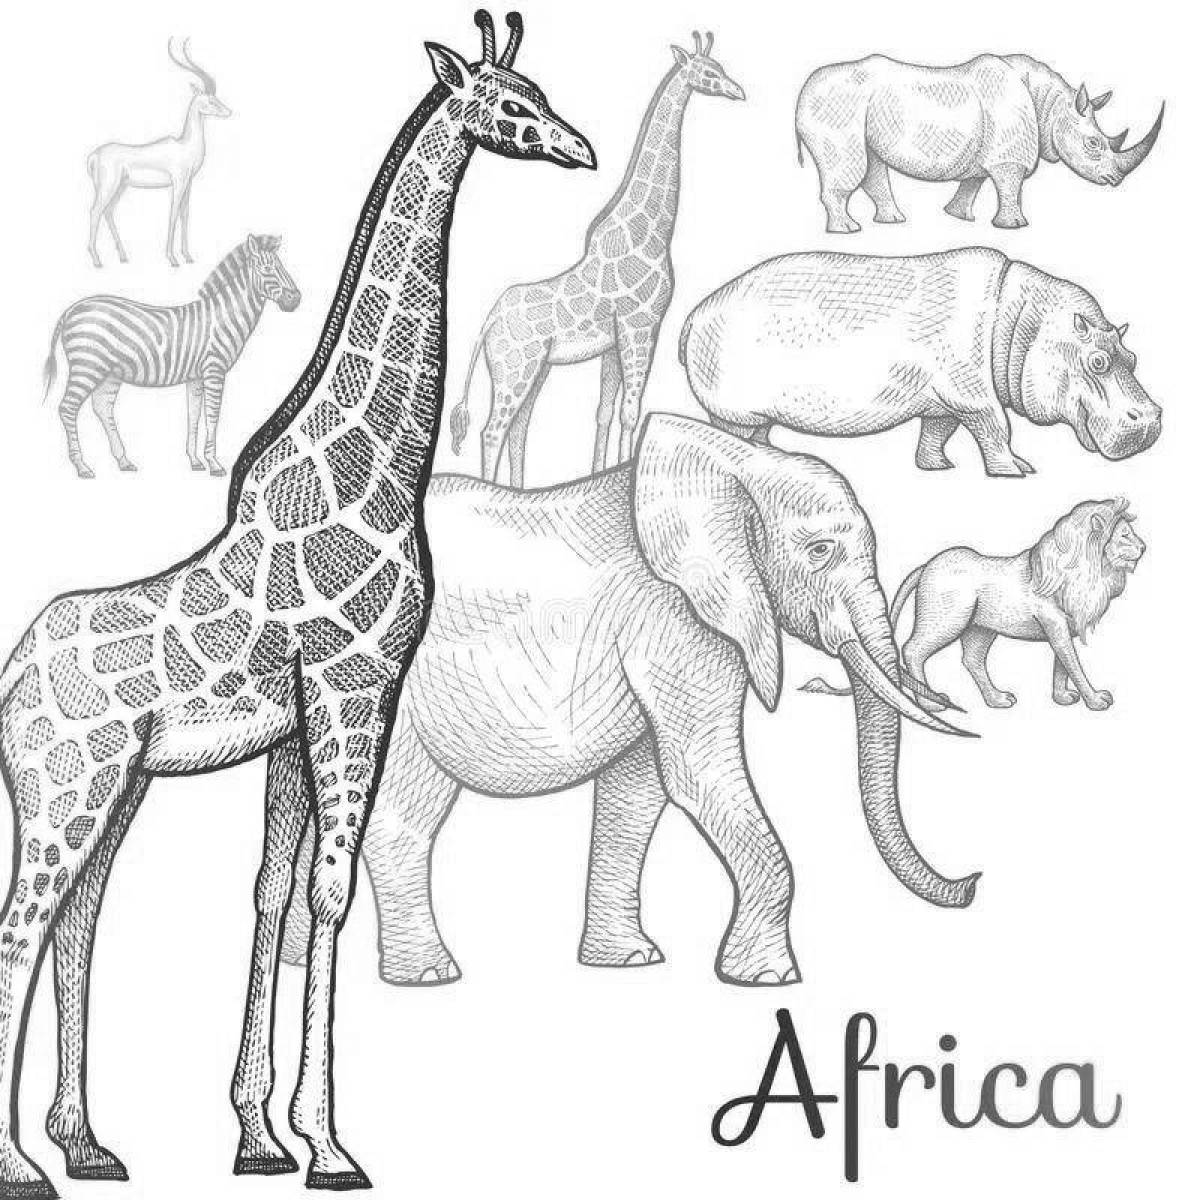 Royal African safari poster